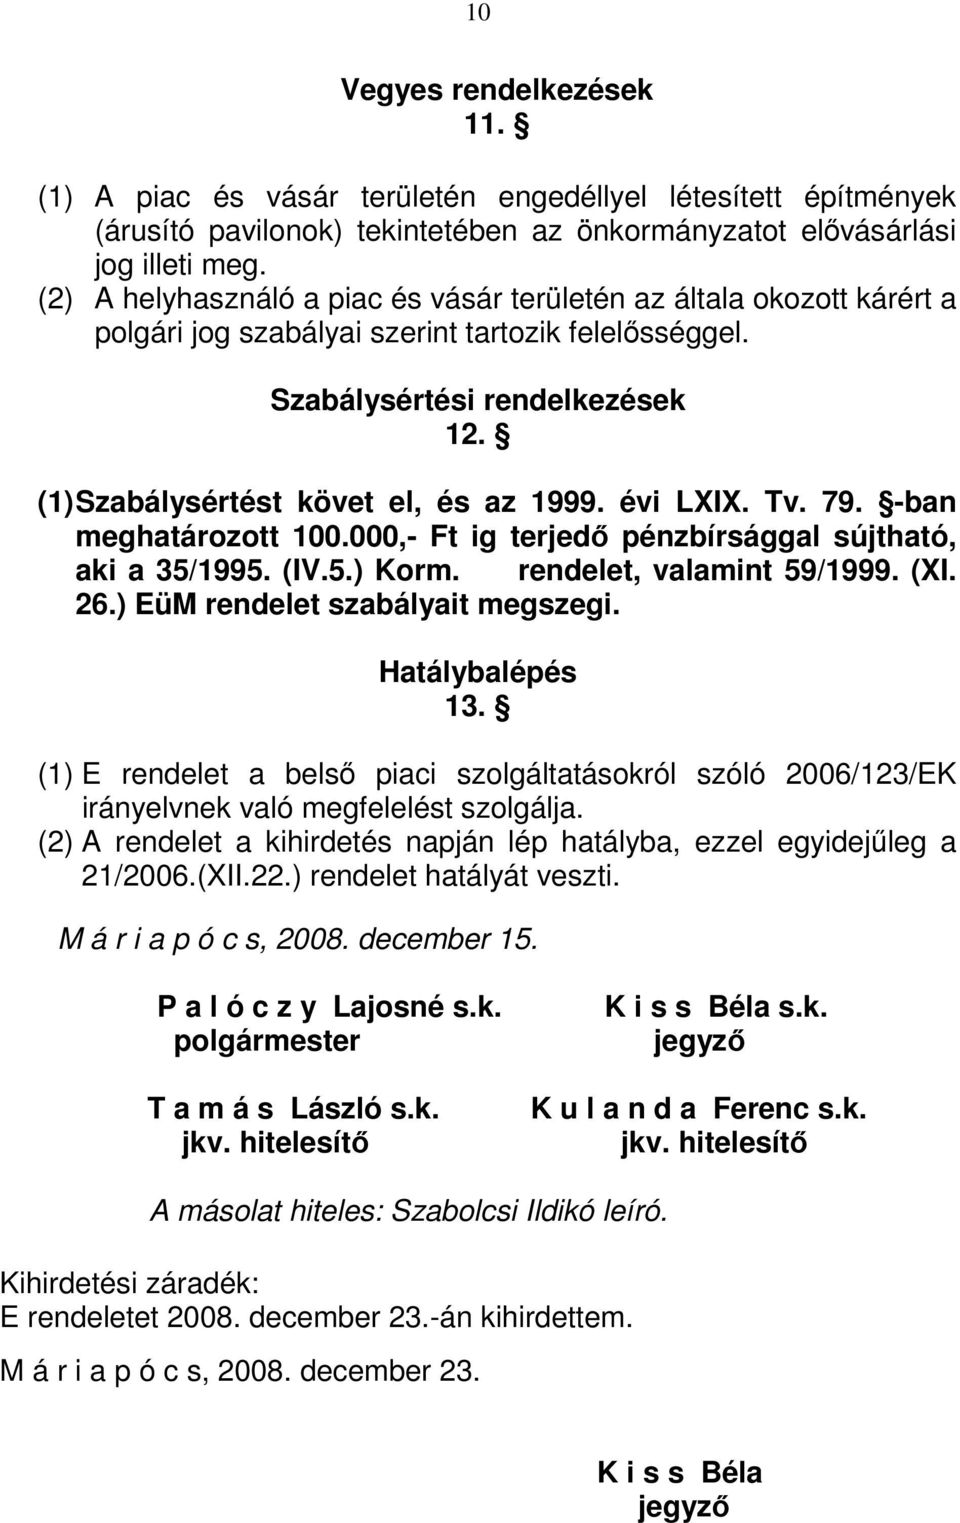 évi LXIX. Tv. 79. -ban meghatározott 100.000,- Ft ig terjedı pénzbírsággal sújtható, aki a 35/1995. (IV.5.) Korm. rendelet, valamint 59/1999. (XI. 26.) EüM rendelet szabályait megszegi.